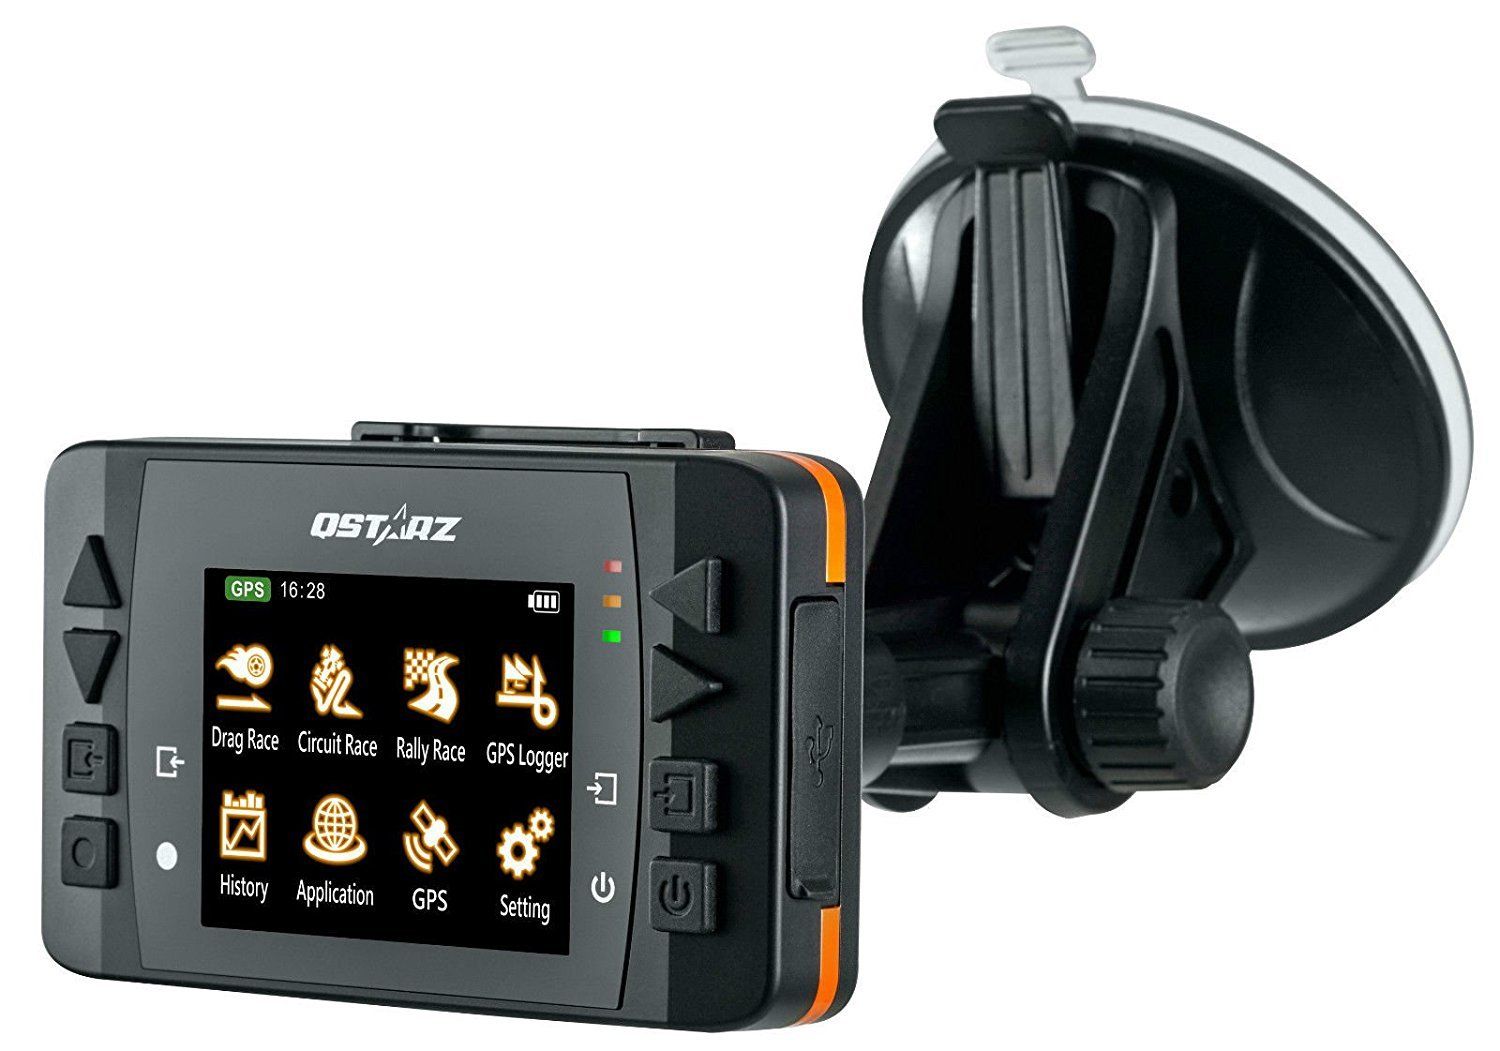 Qstarz LT-6000S 10Hz GPS Rundenzeitmesser Performance Box 1/4 Meile Zeit